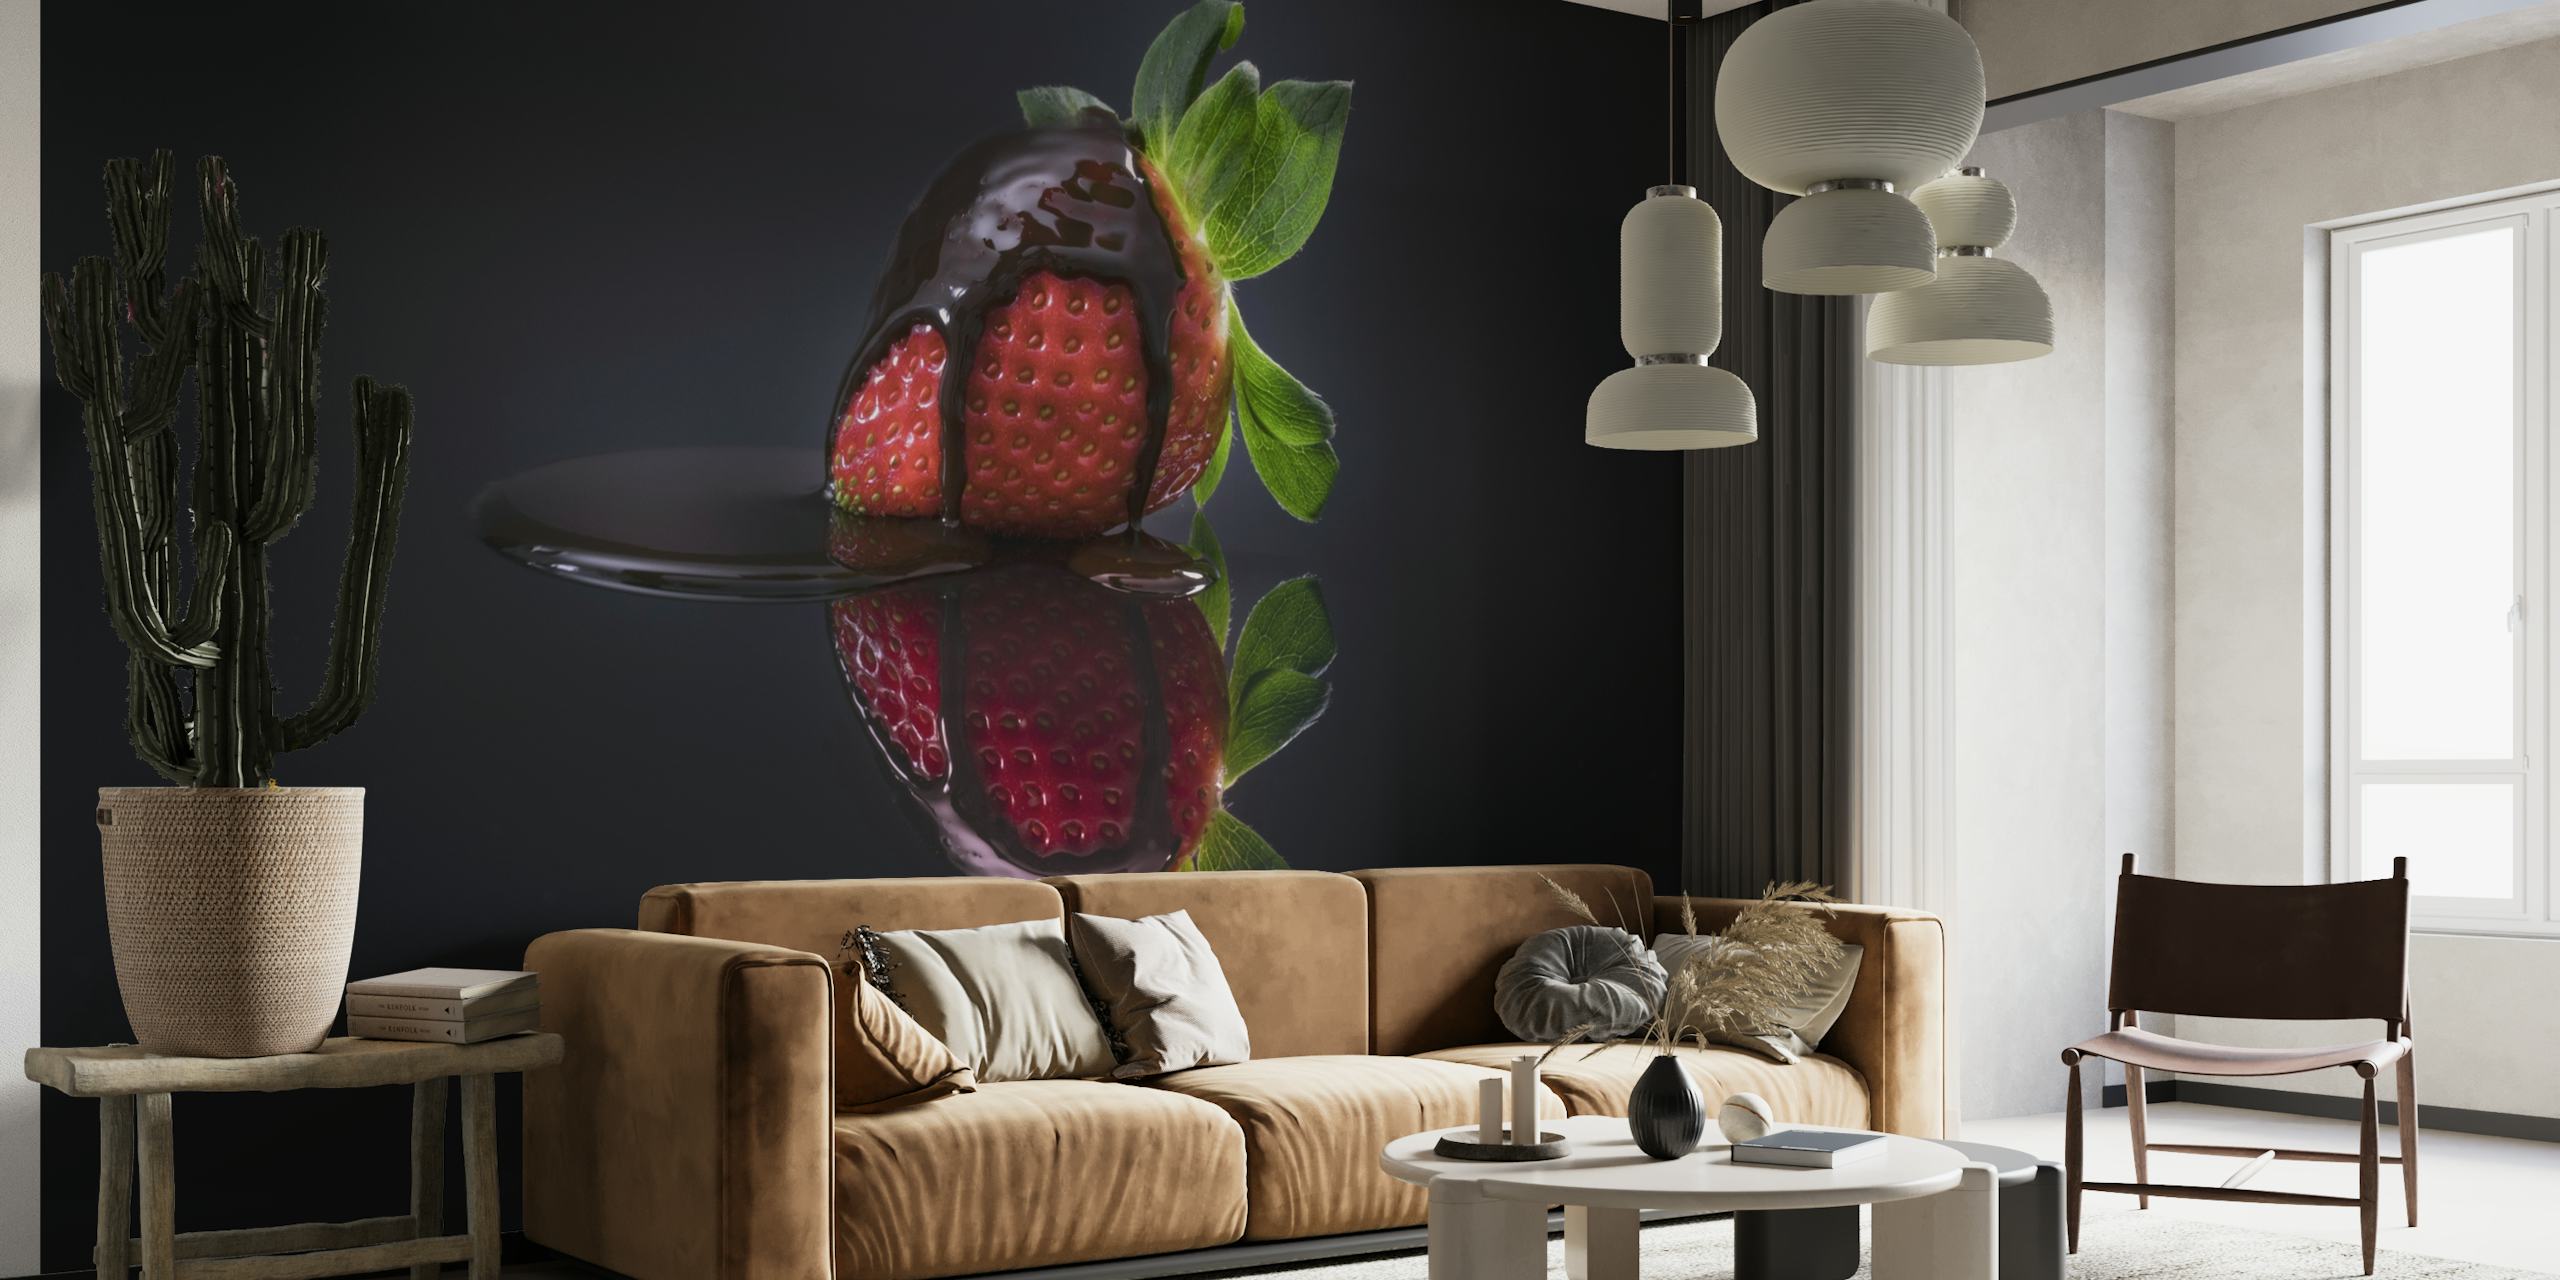 Fotobehang van rijpe aardbeien met donkere achtergrond